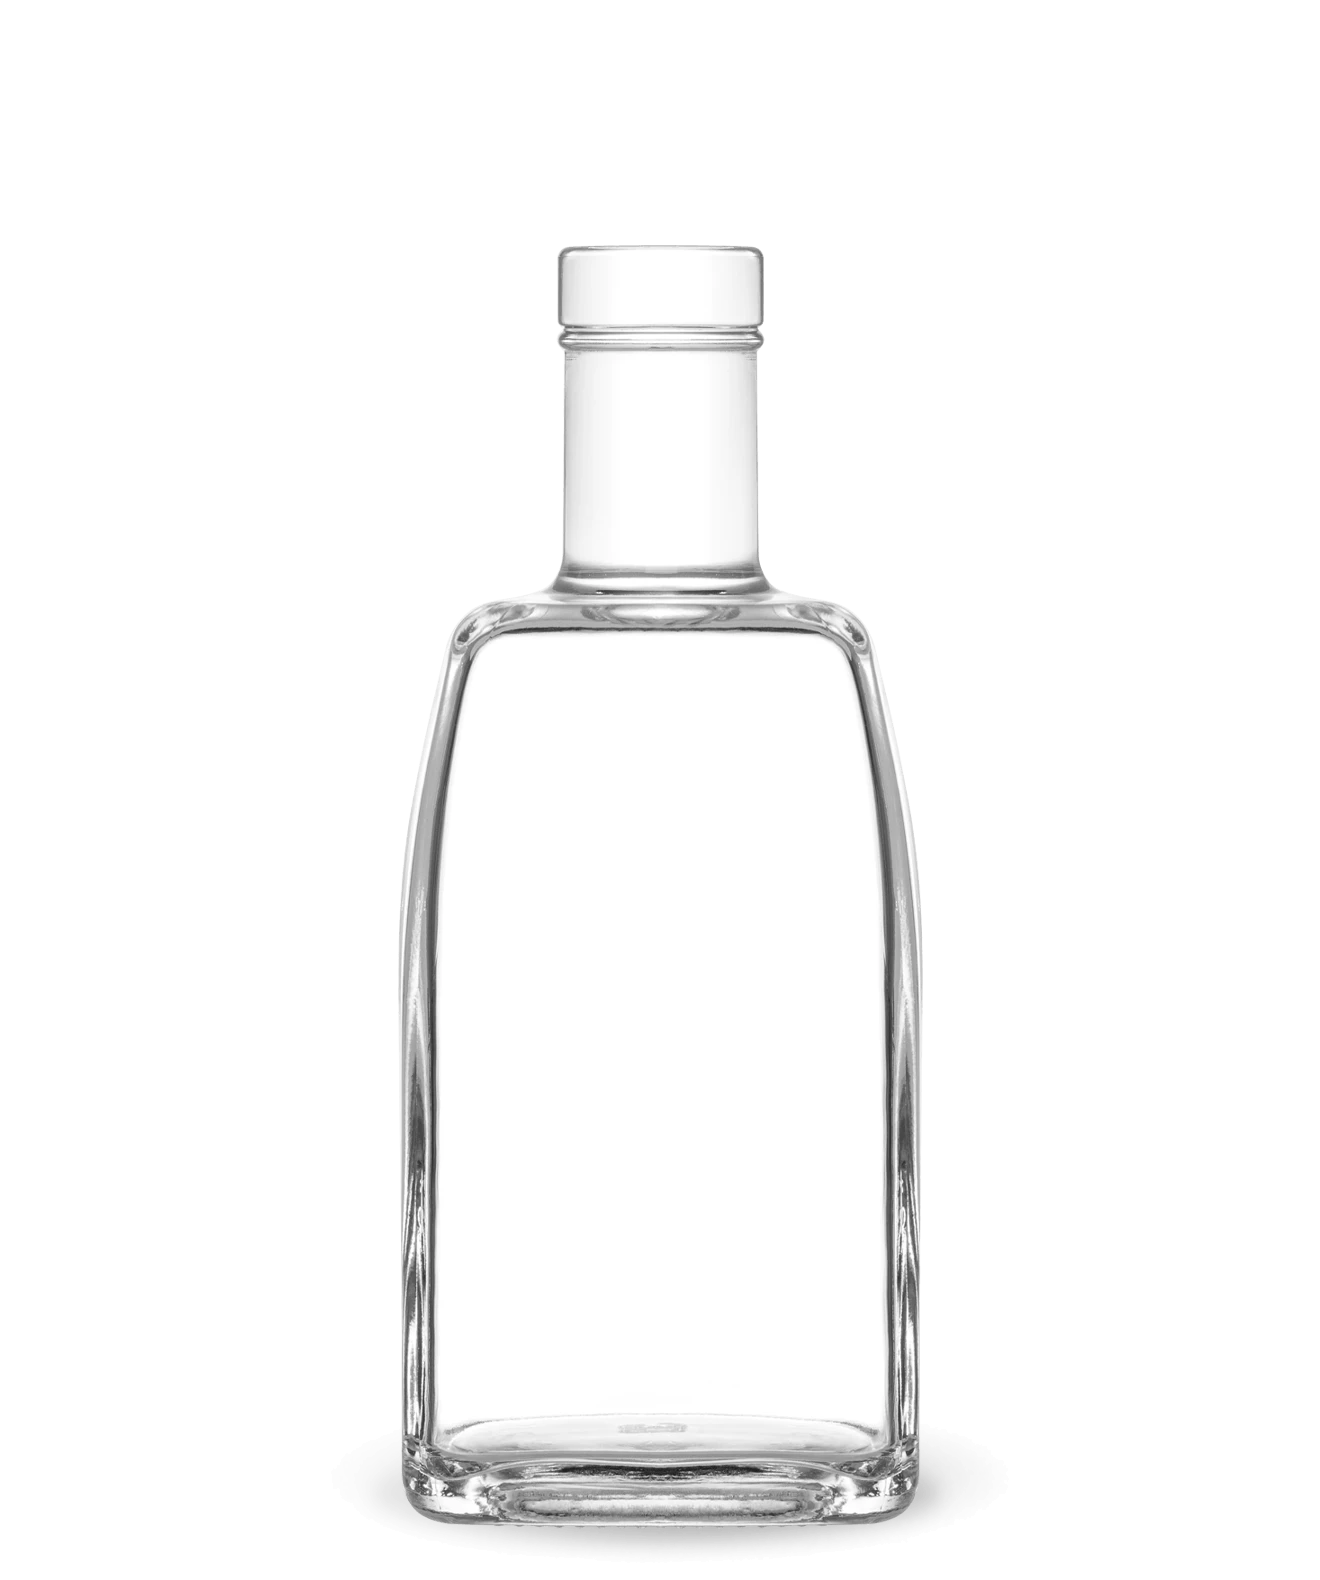 NATURA QUADRA - Glass bottle for spirits - Vetroelite